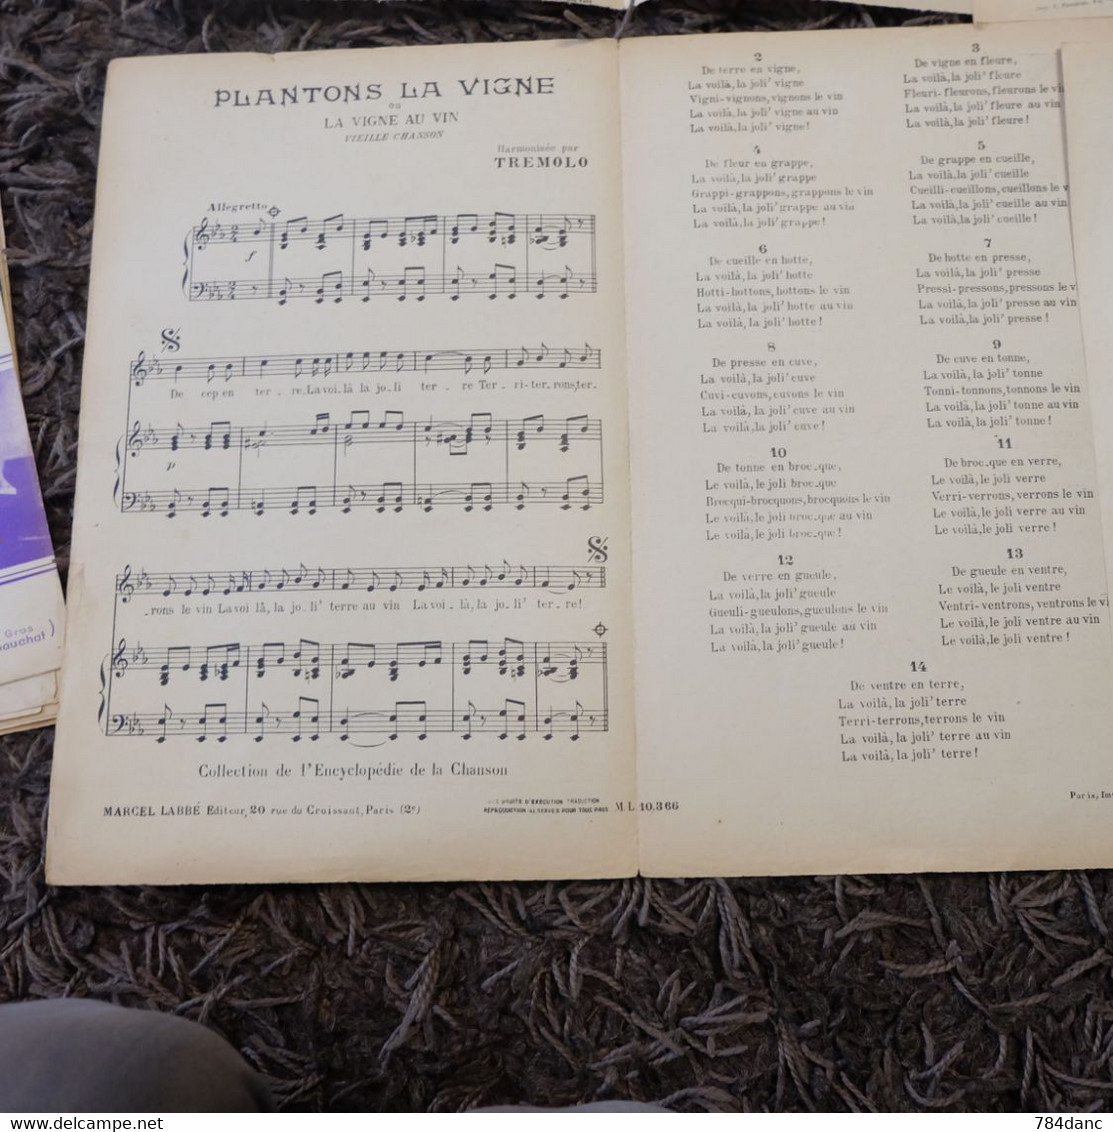 Lot 4 Partitions Musique -Pres De Toi Valse Tango De Lola Plantons La Vigne  Guy Berry - Liederbücher